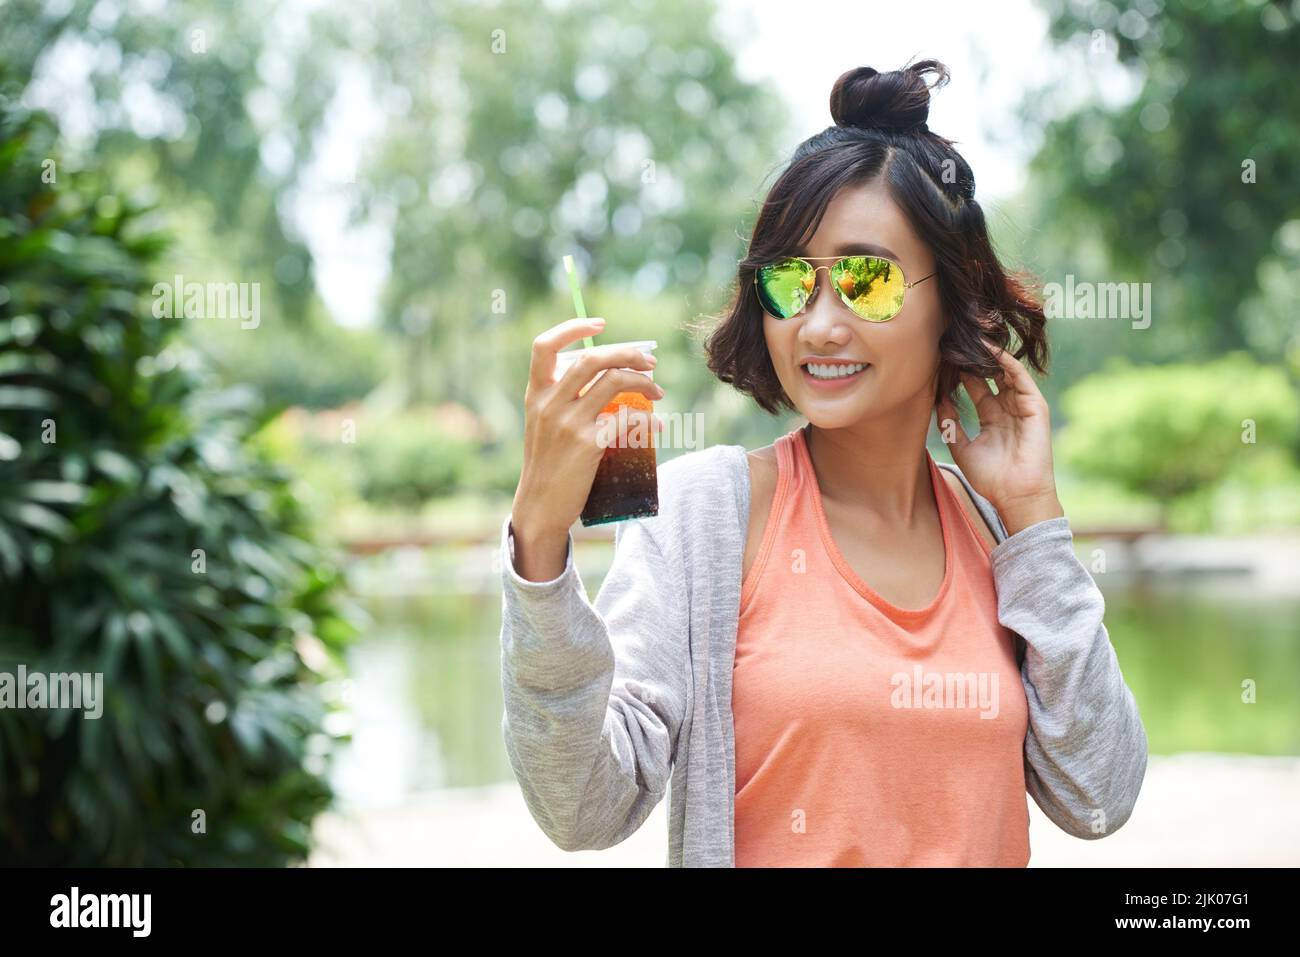 Ritratto vita-up di ragazza asiatica allegra indossare occhiali da sole guardando via con il sorriso toothy mentre tiene in mano una tazza di plastica di tè ghiacciato, parco pubblico verde sullo sfondo Foto Stock